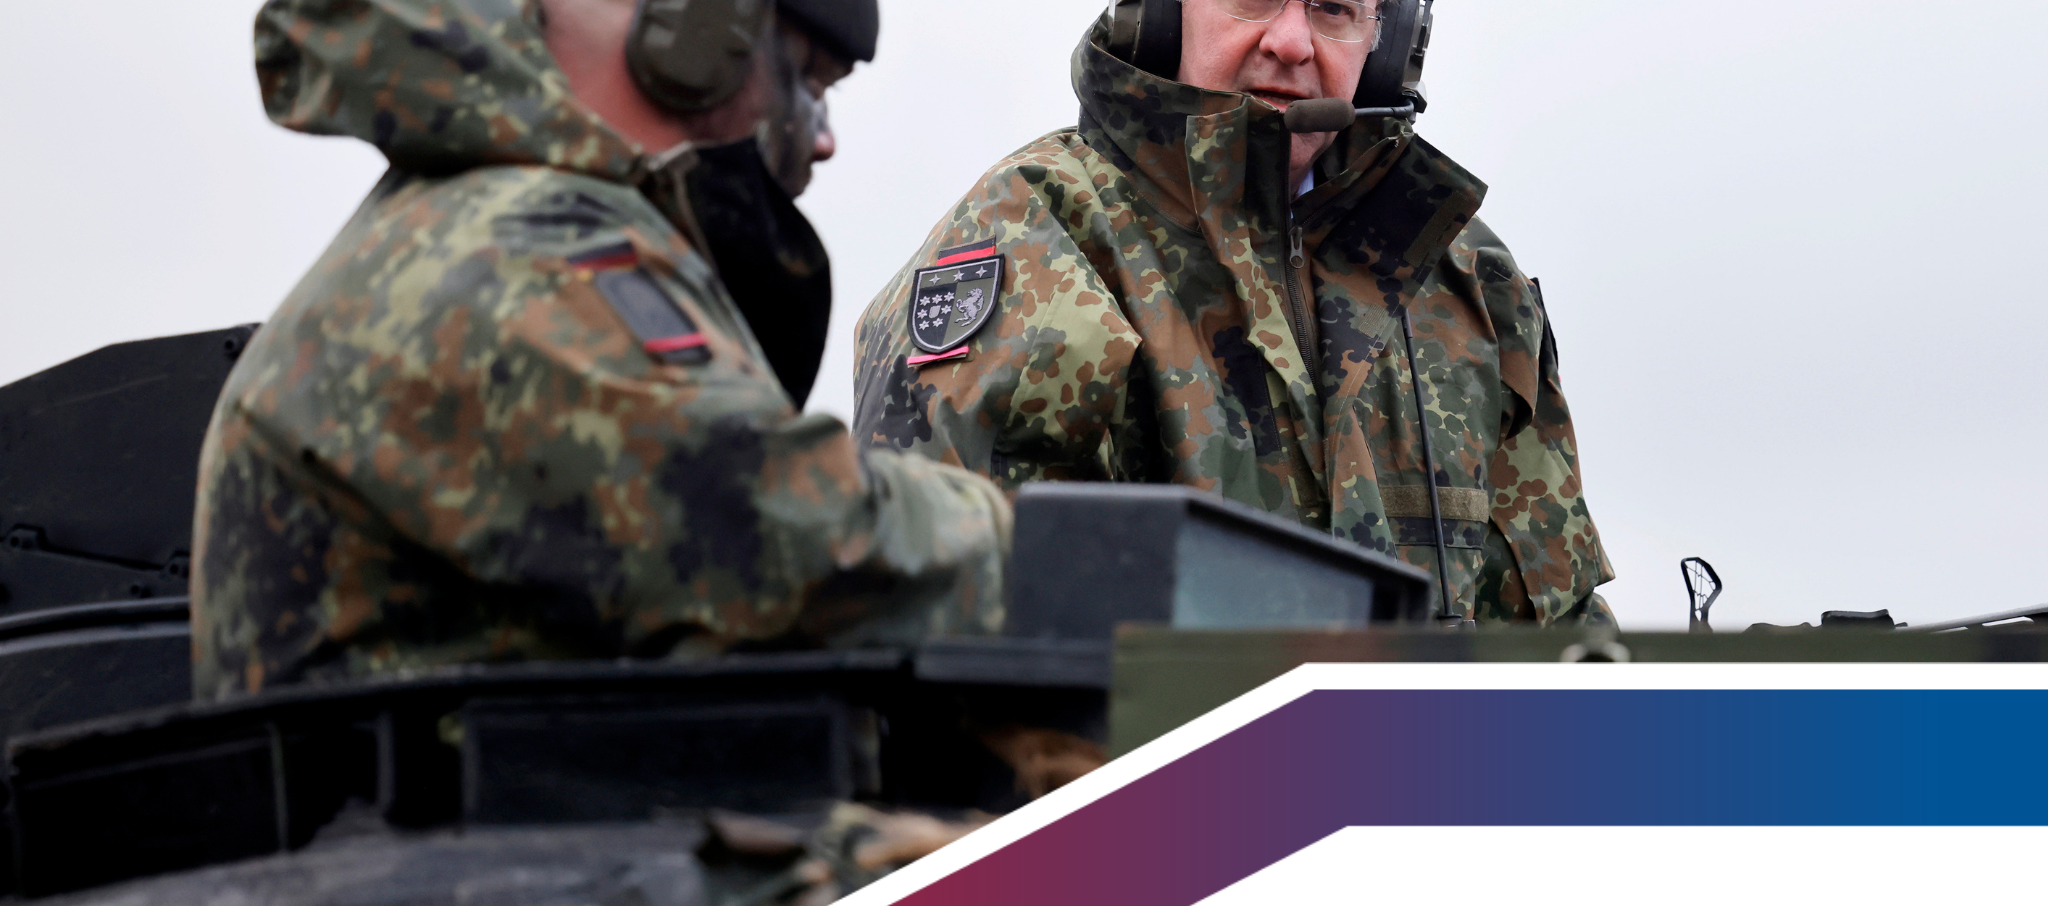 Bundesverteidigungsminister Boris Pistorius fährt auf einem Leopard 2 A6 bei seinem Besuch von Panzerbataillon 203 in der Generalfeldmarschall-Rommel-Kaserne. Hier informiert sich der Minister über die Leistungsfähigkeit des Leopard 2A6 Kampfpanzer, der in der Ukraine gegen Putin eingesetzt werden soll. 